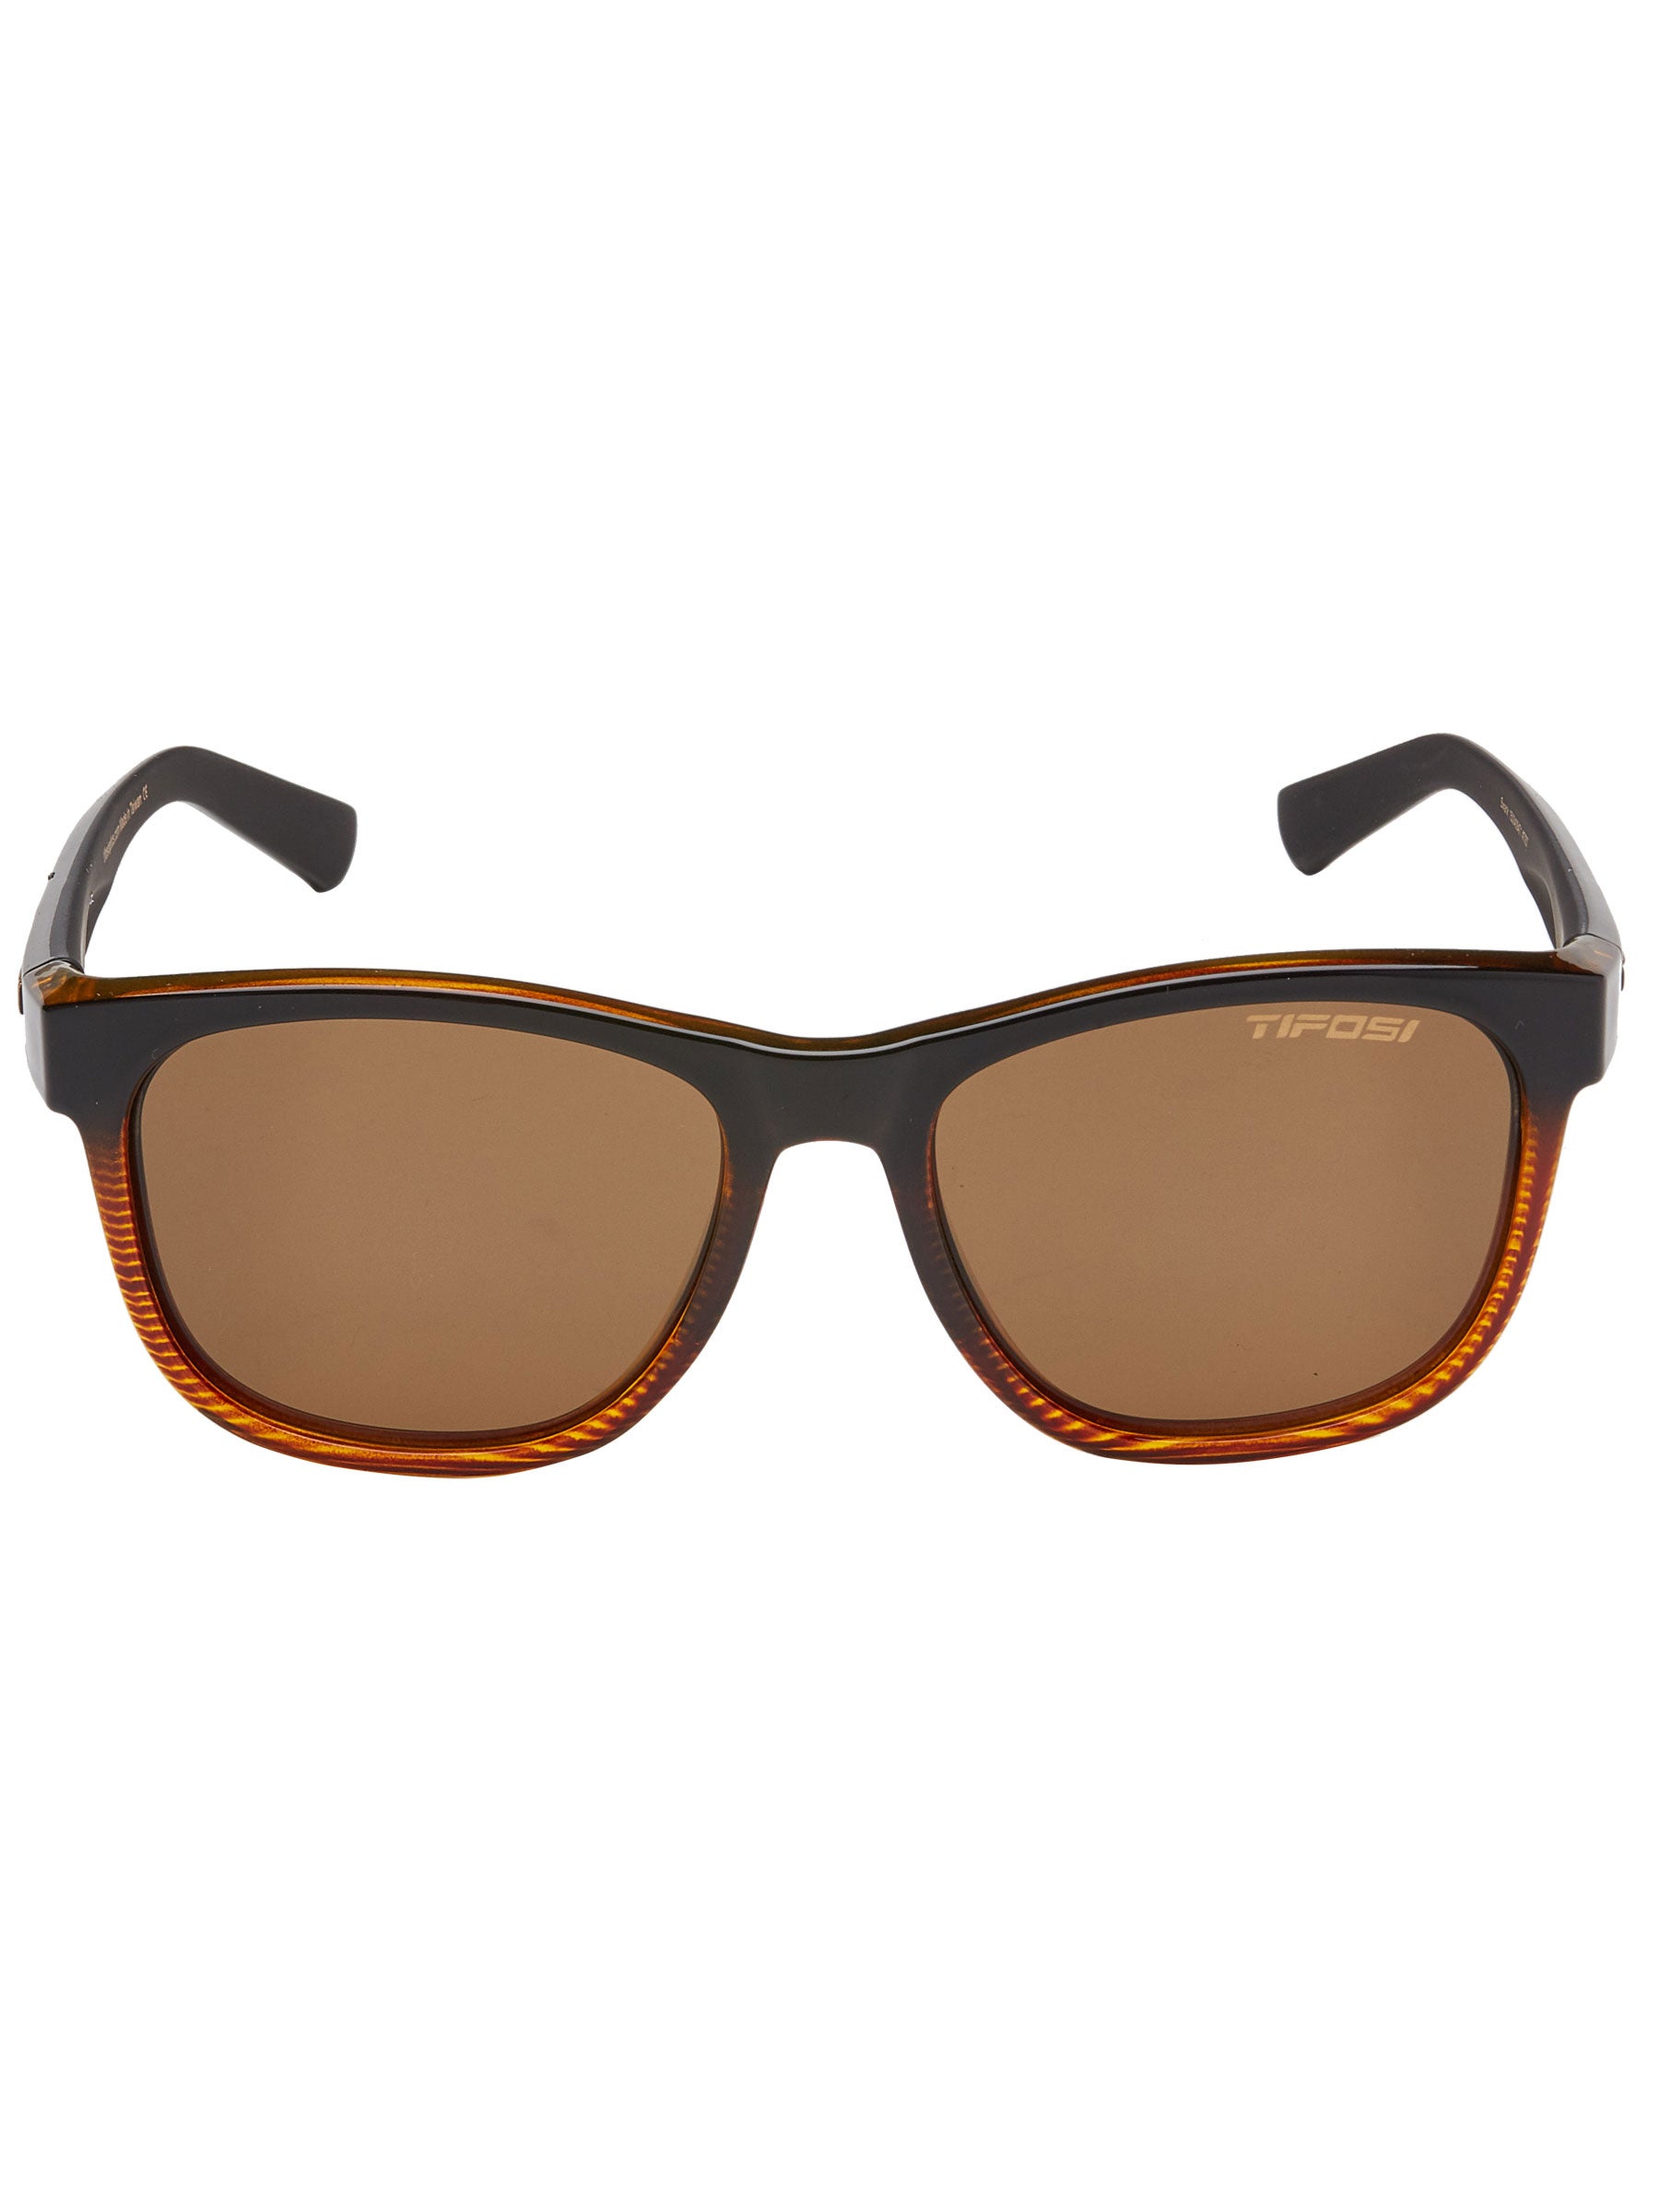 Swank Tifosi Sunglasses Brown Fade w/ Brown Lens 1500409471 